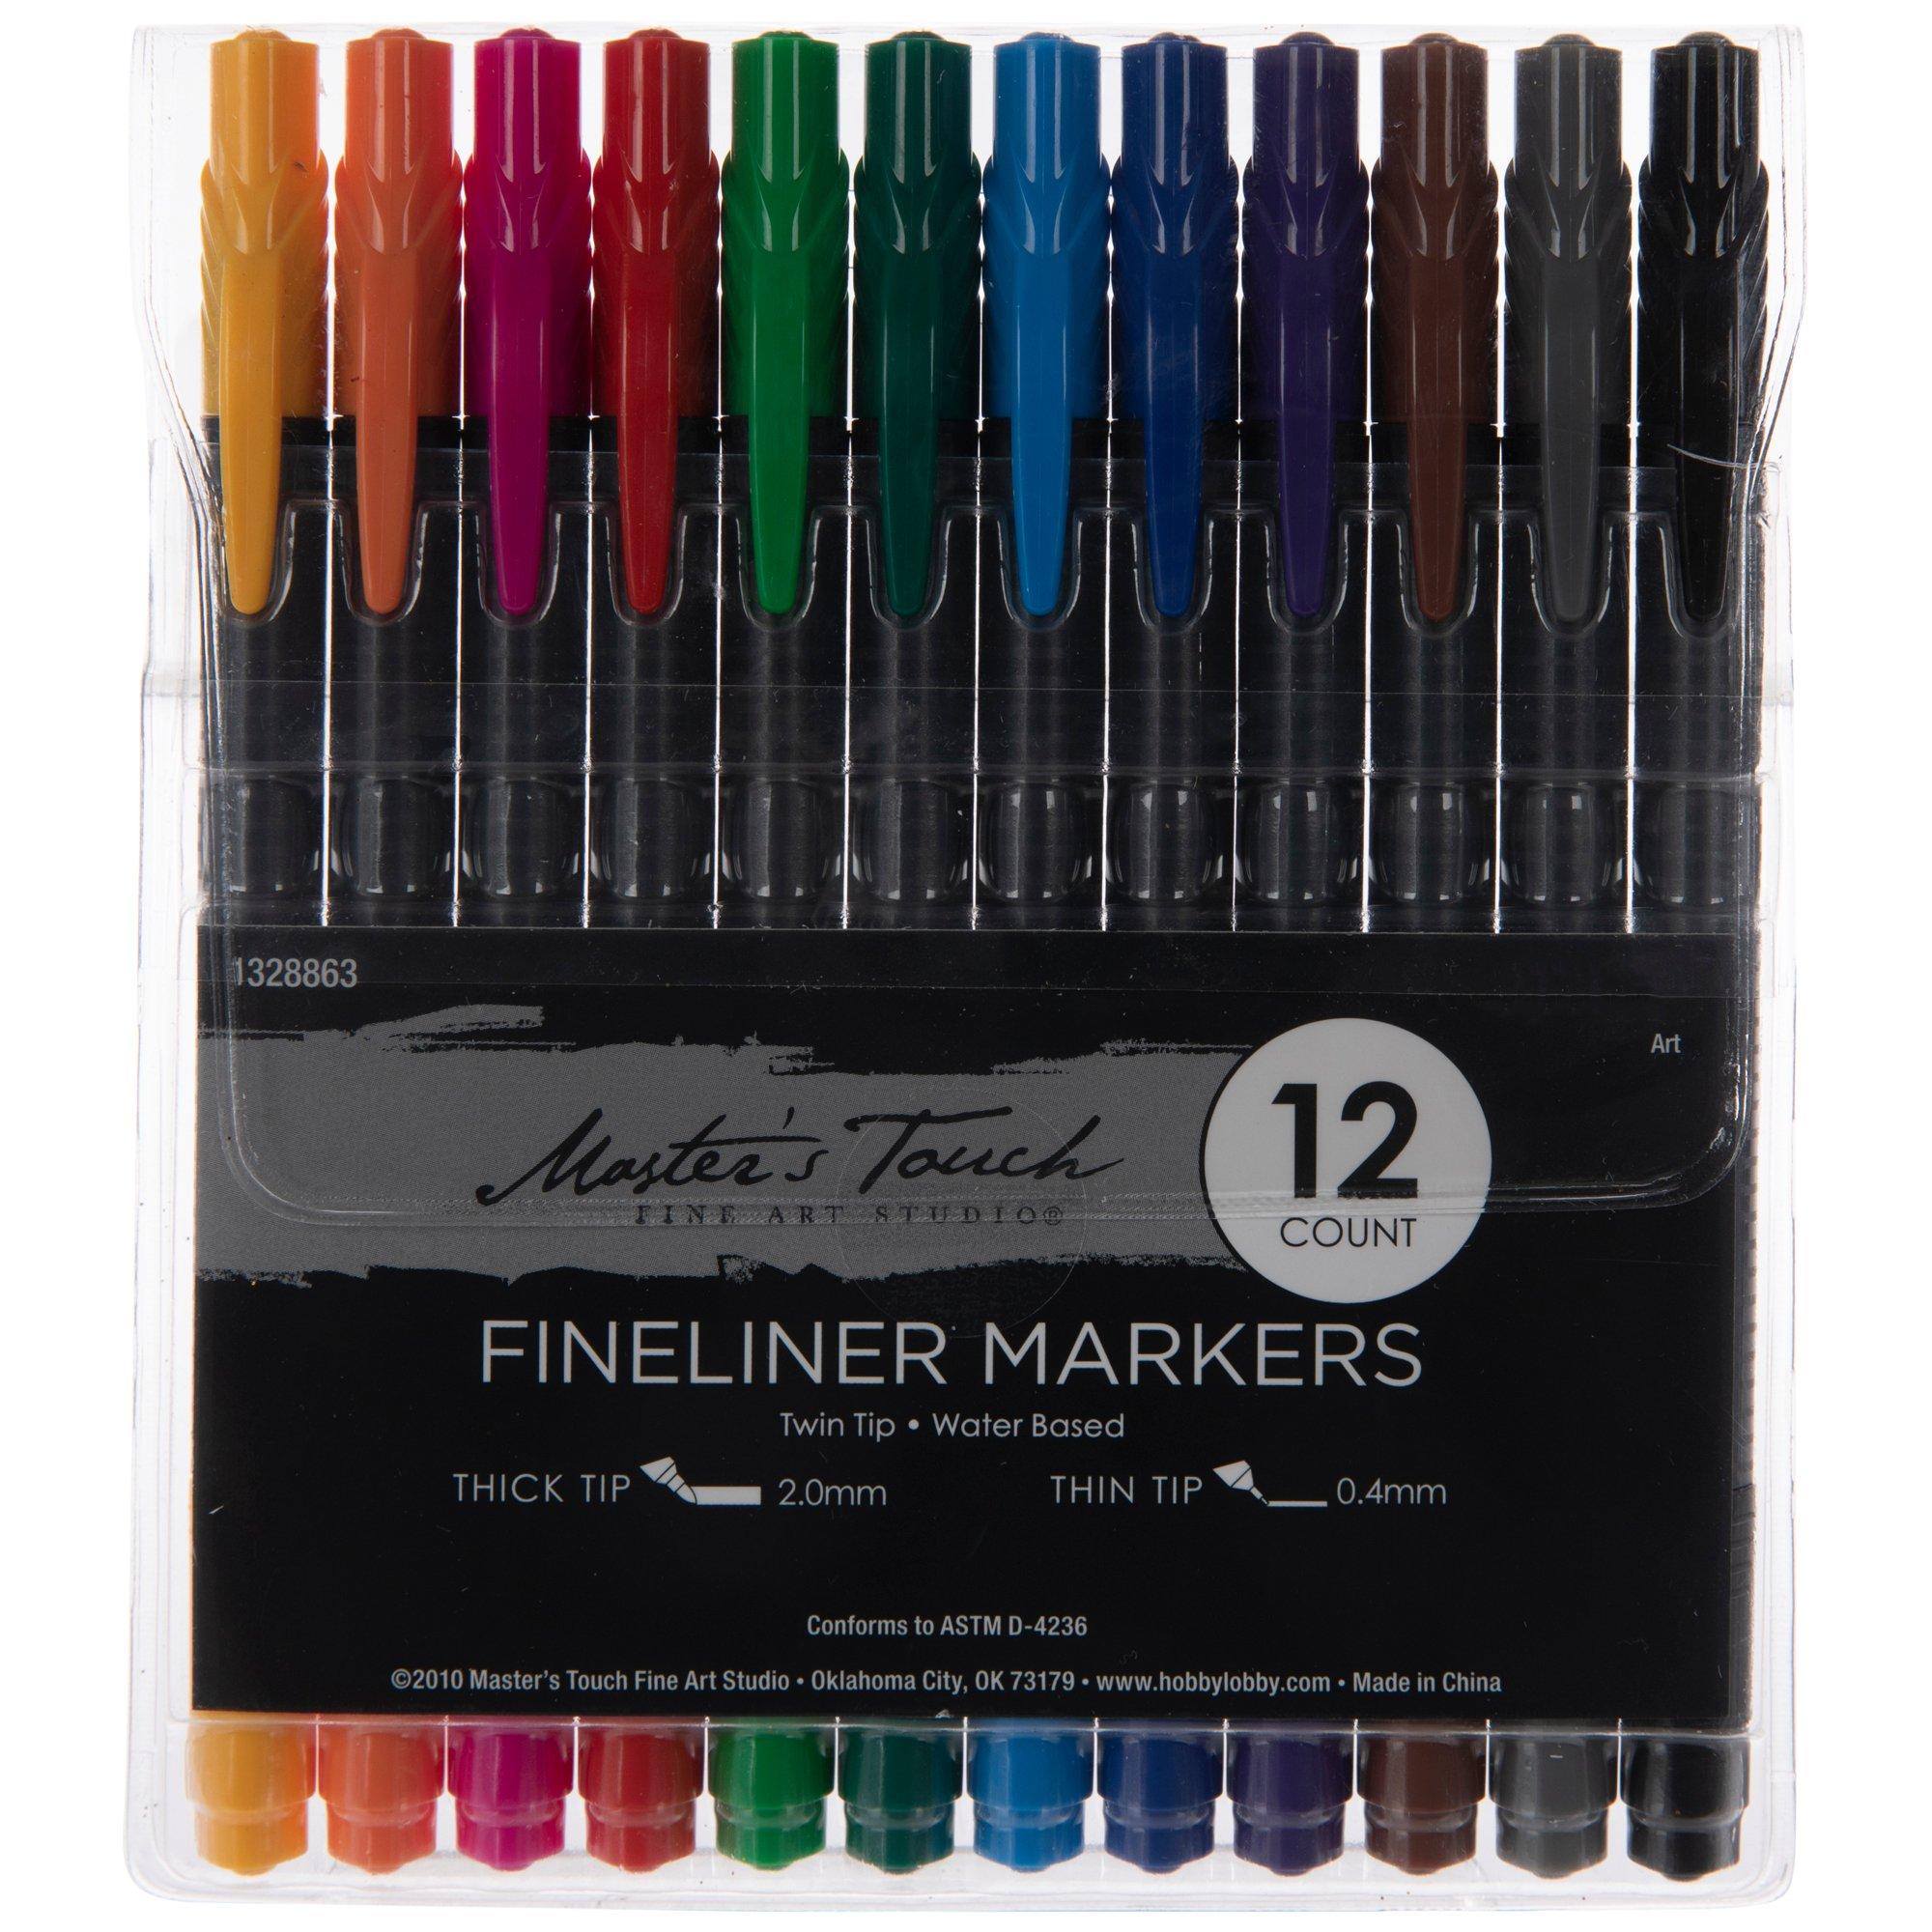 Prismacolor Fine Marker Brights 12pc